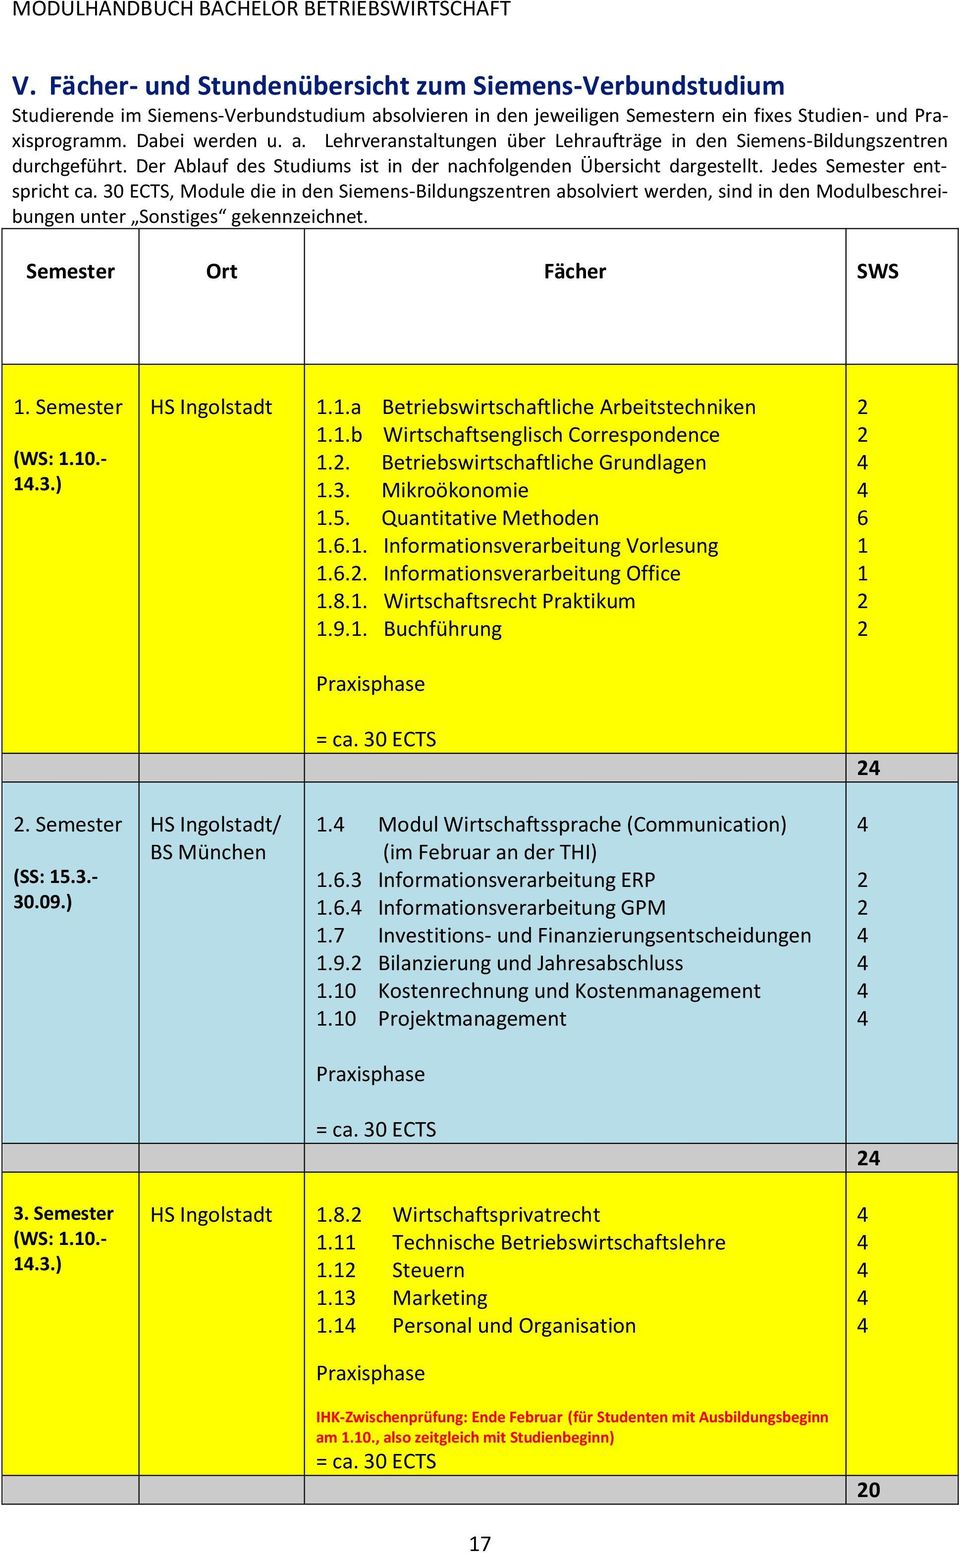 30 ECTS, Module die in den Siemens-Bildungszentren absolviert werden, sind in den Modulbeschreibungen unter Sonstiges gekennzeichnet. Semester Ort Fächer SWS 1. Semester (WS: 1.10.- 14.3.) HS Ingolstadt 1.